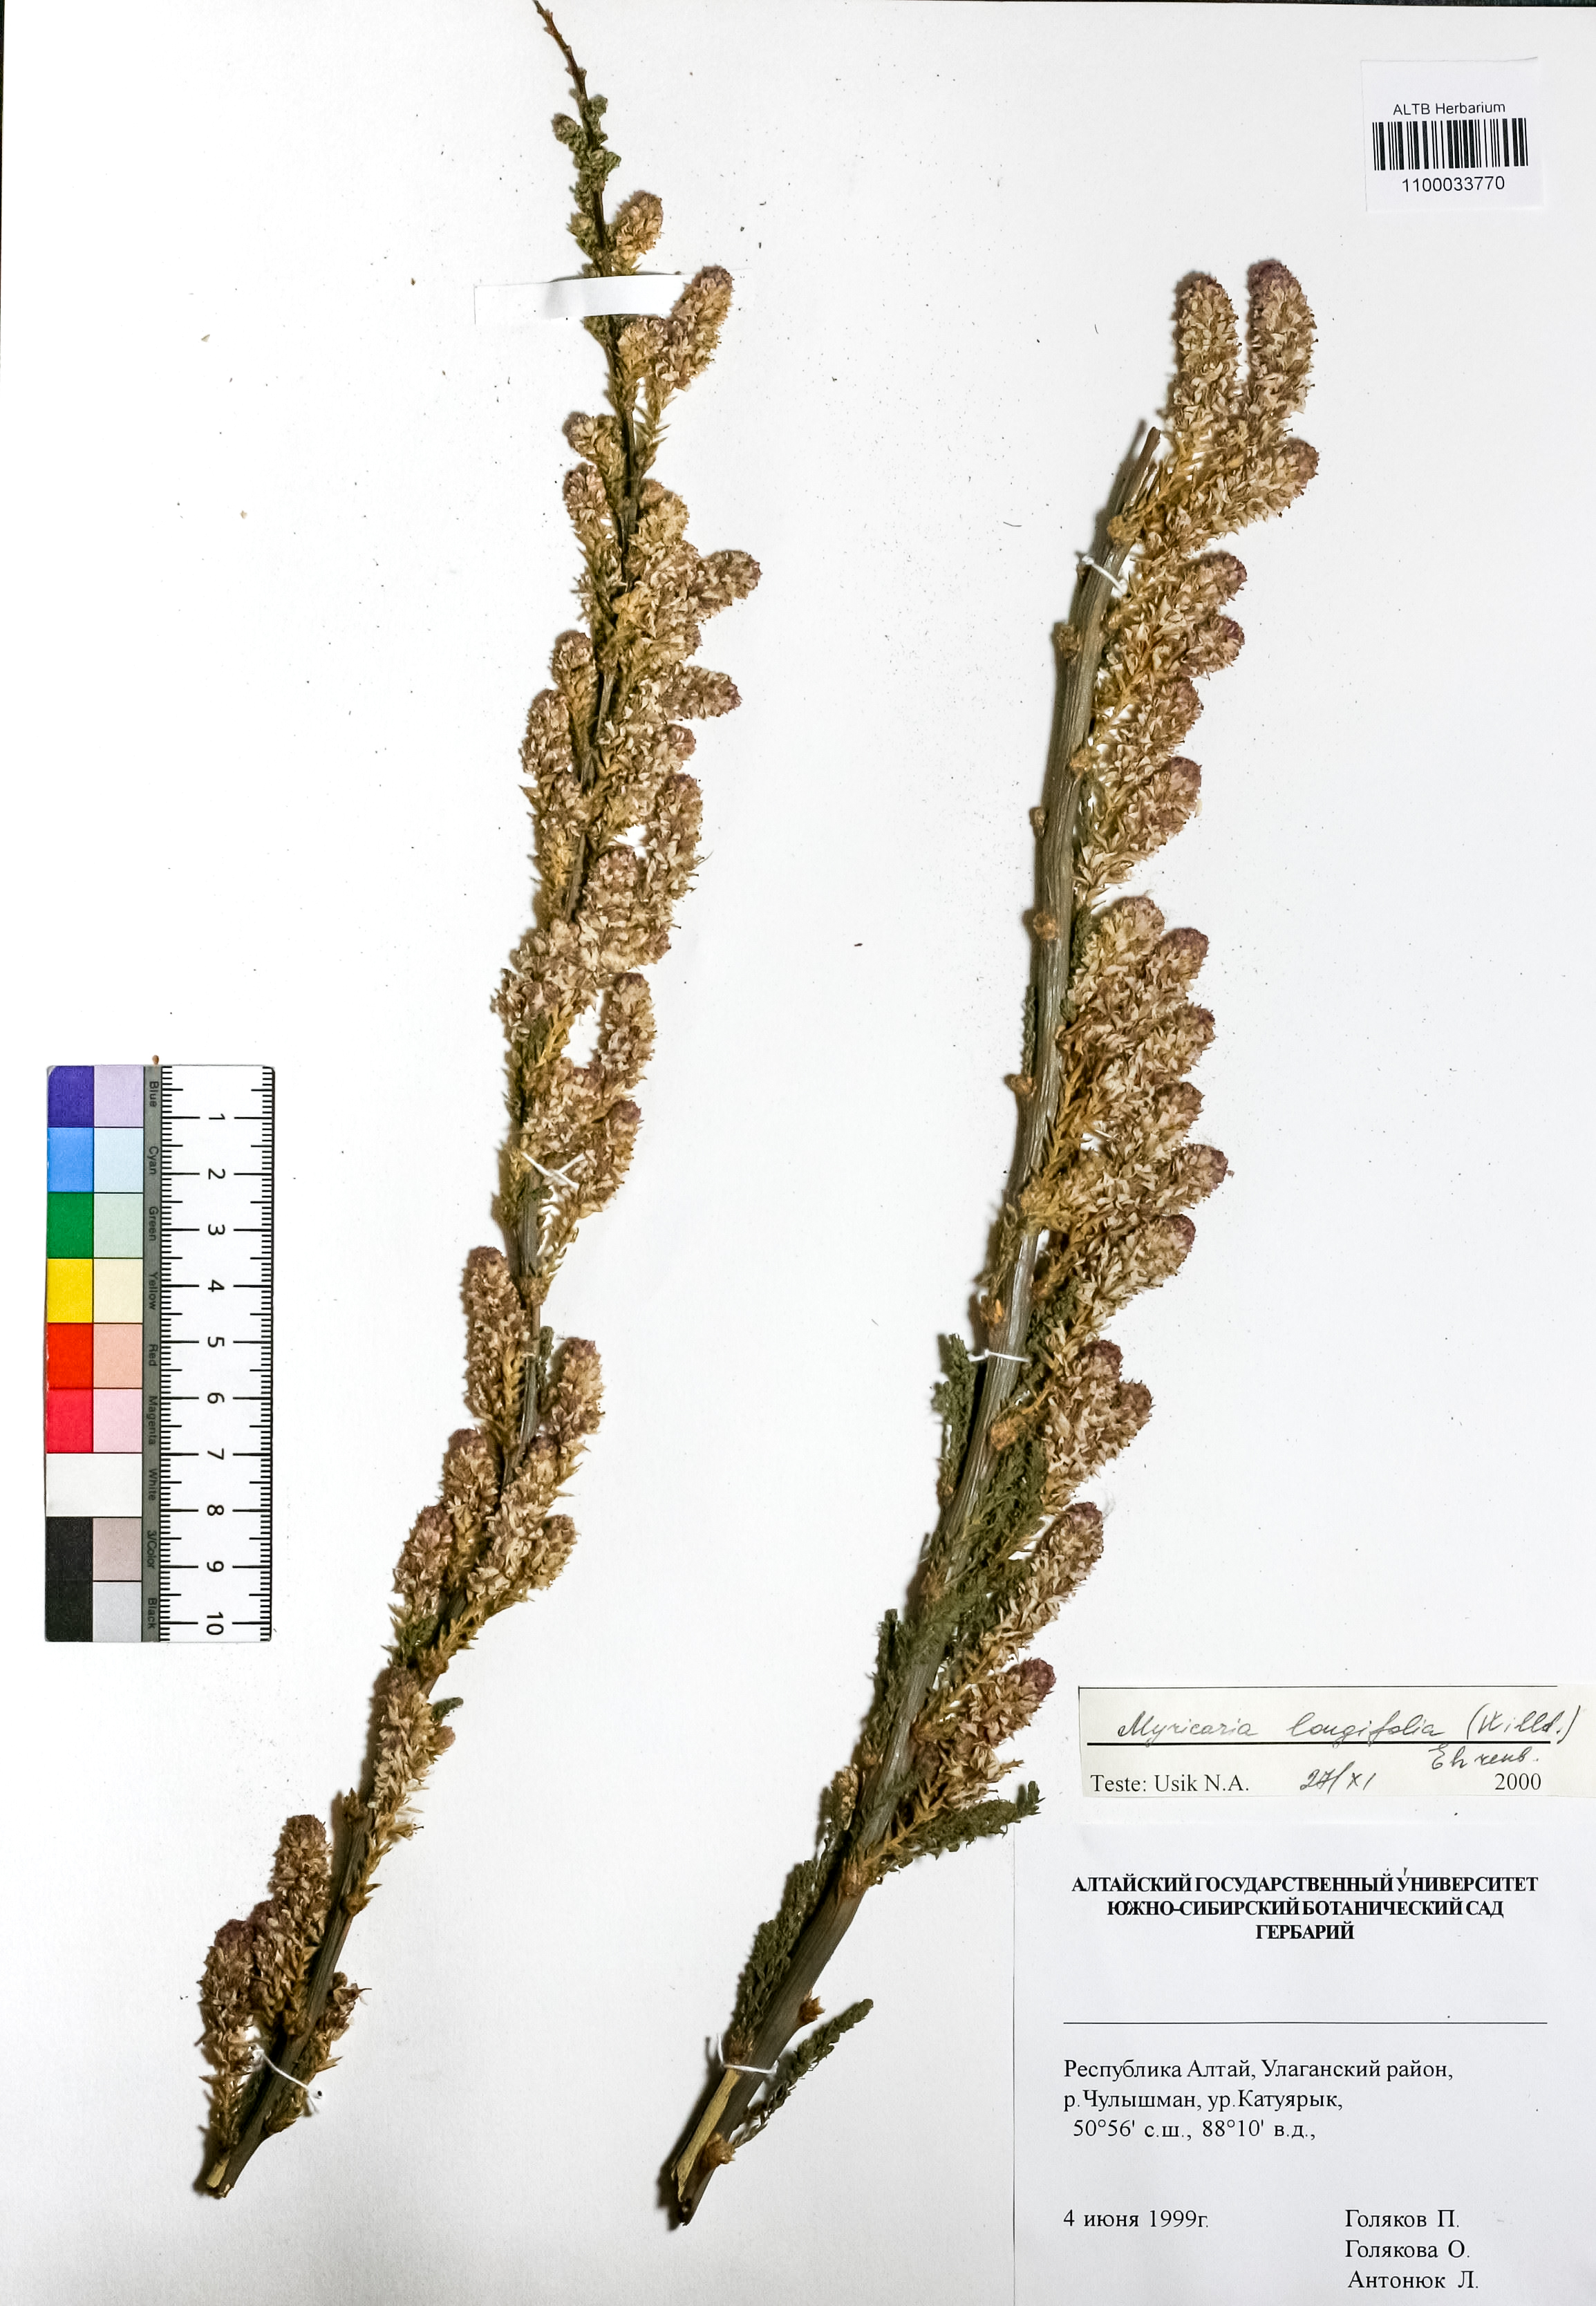 Myricaria longifolia Ehrenb.